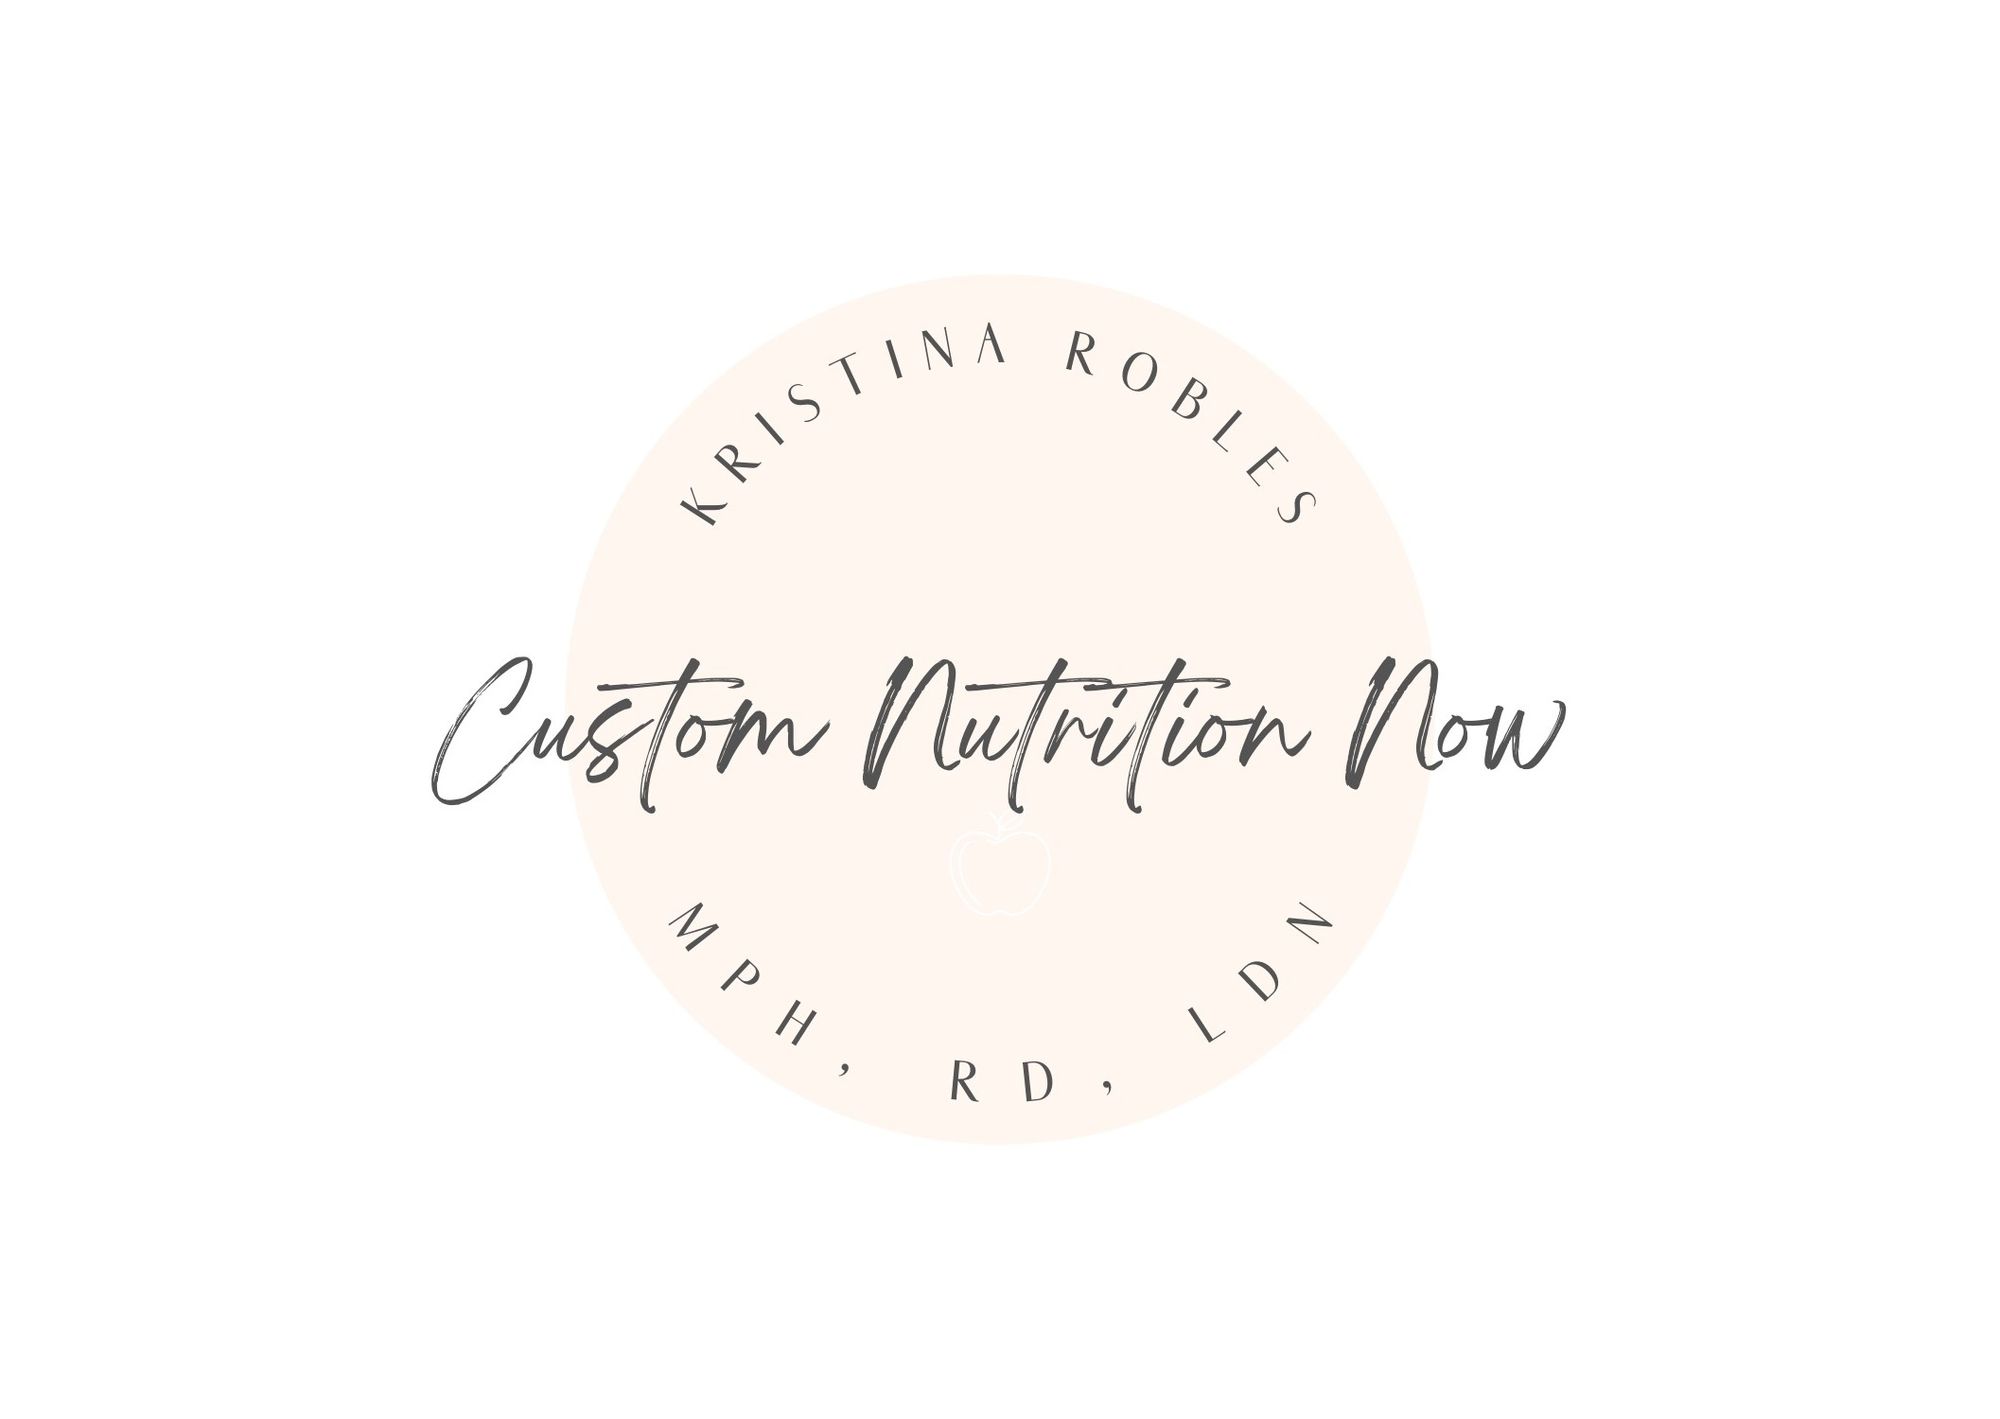 Reach Your Health Goals! - Custom Nutrition Now